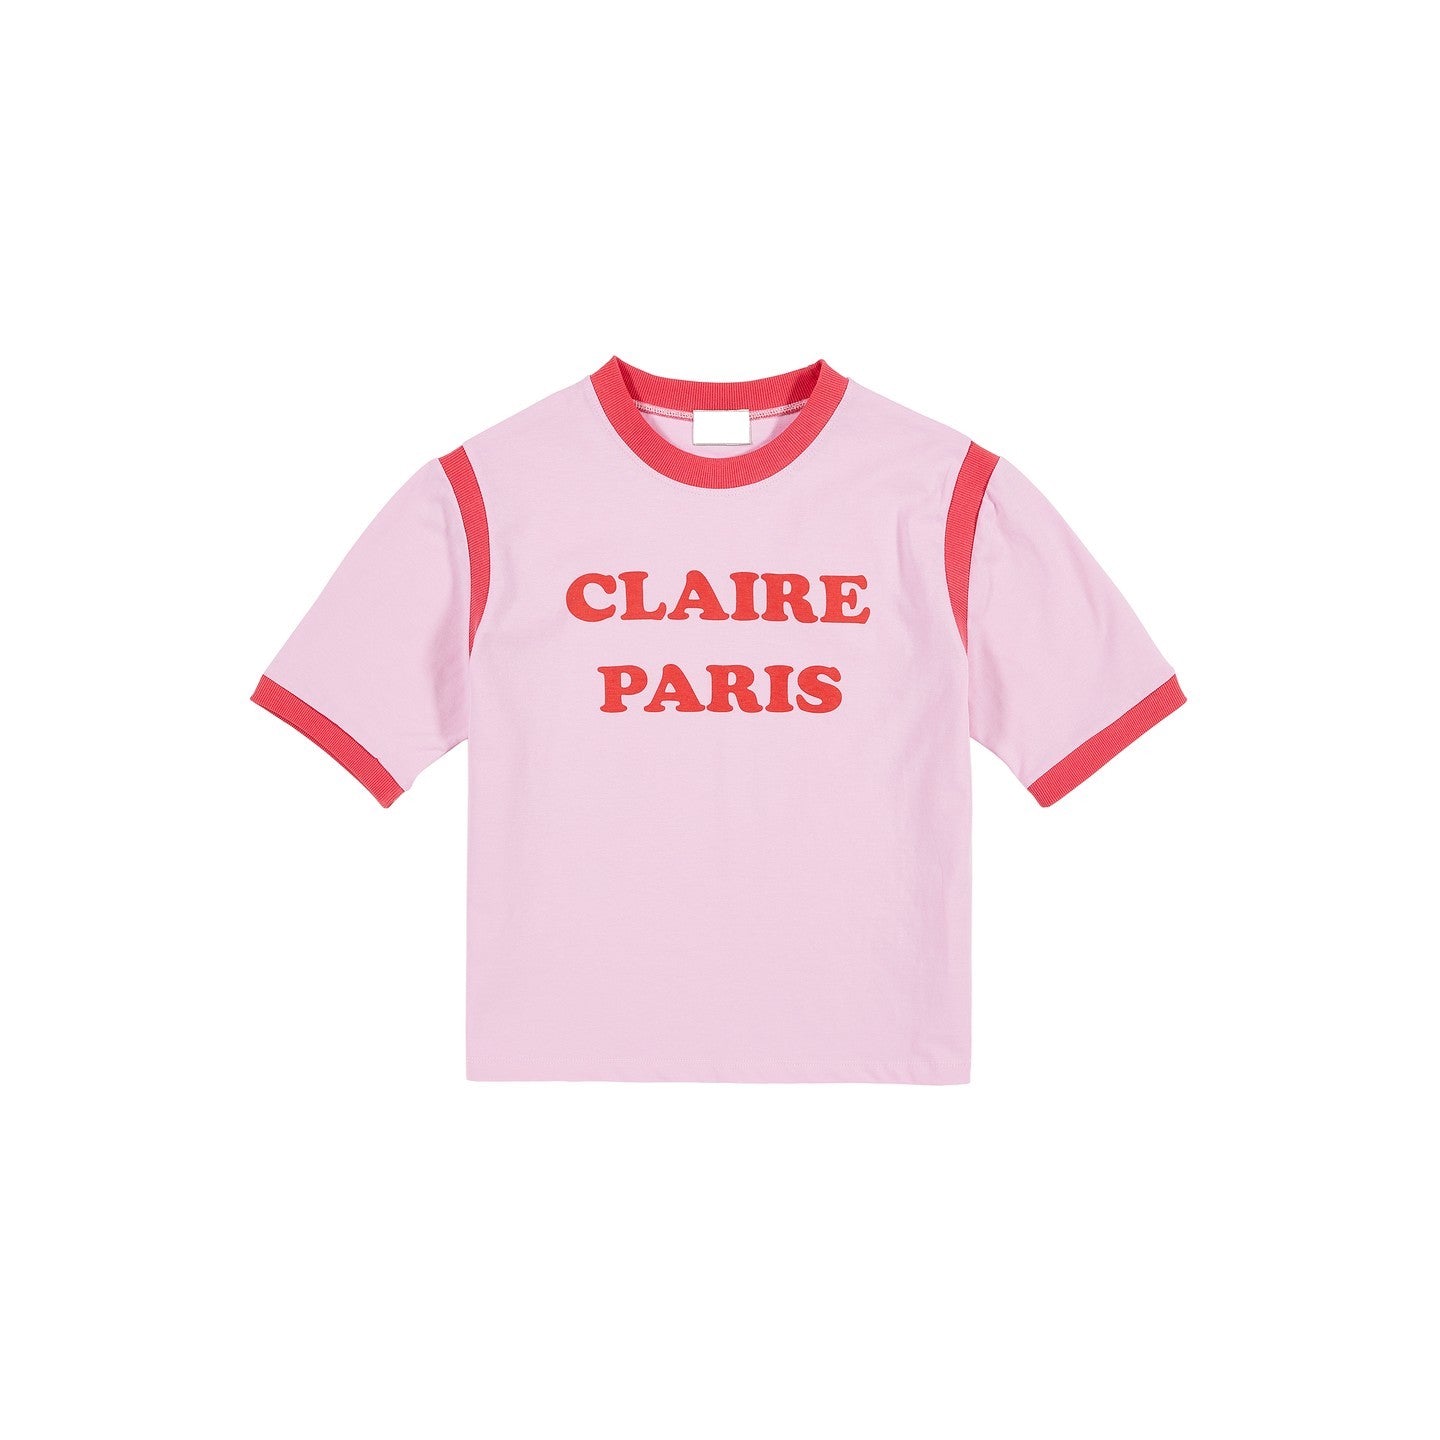 'Clair Paris' Graphic Top